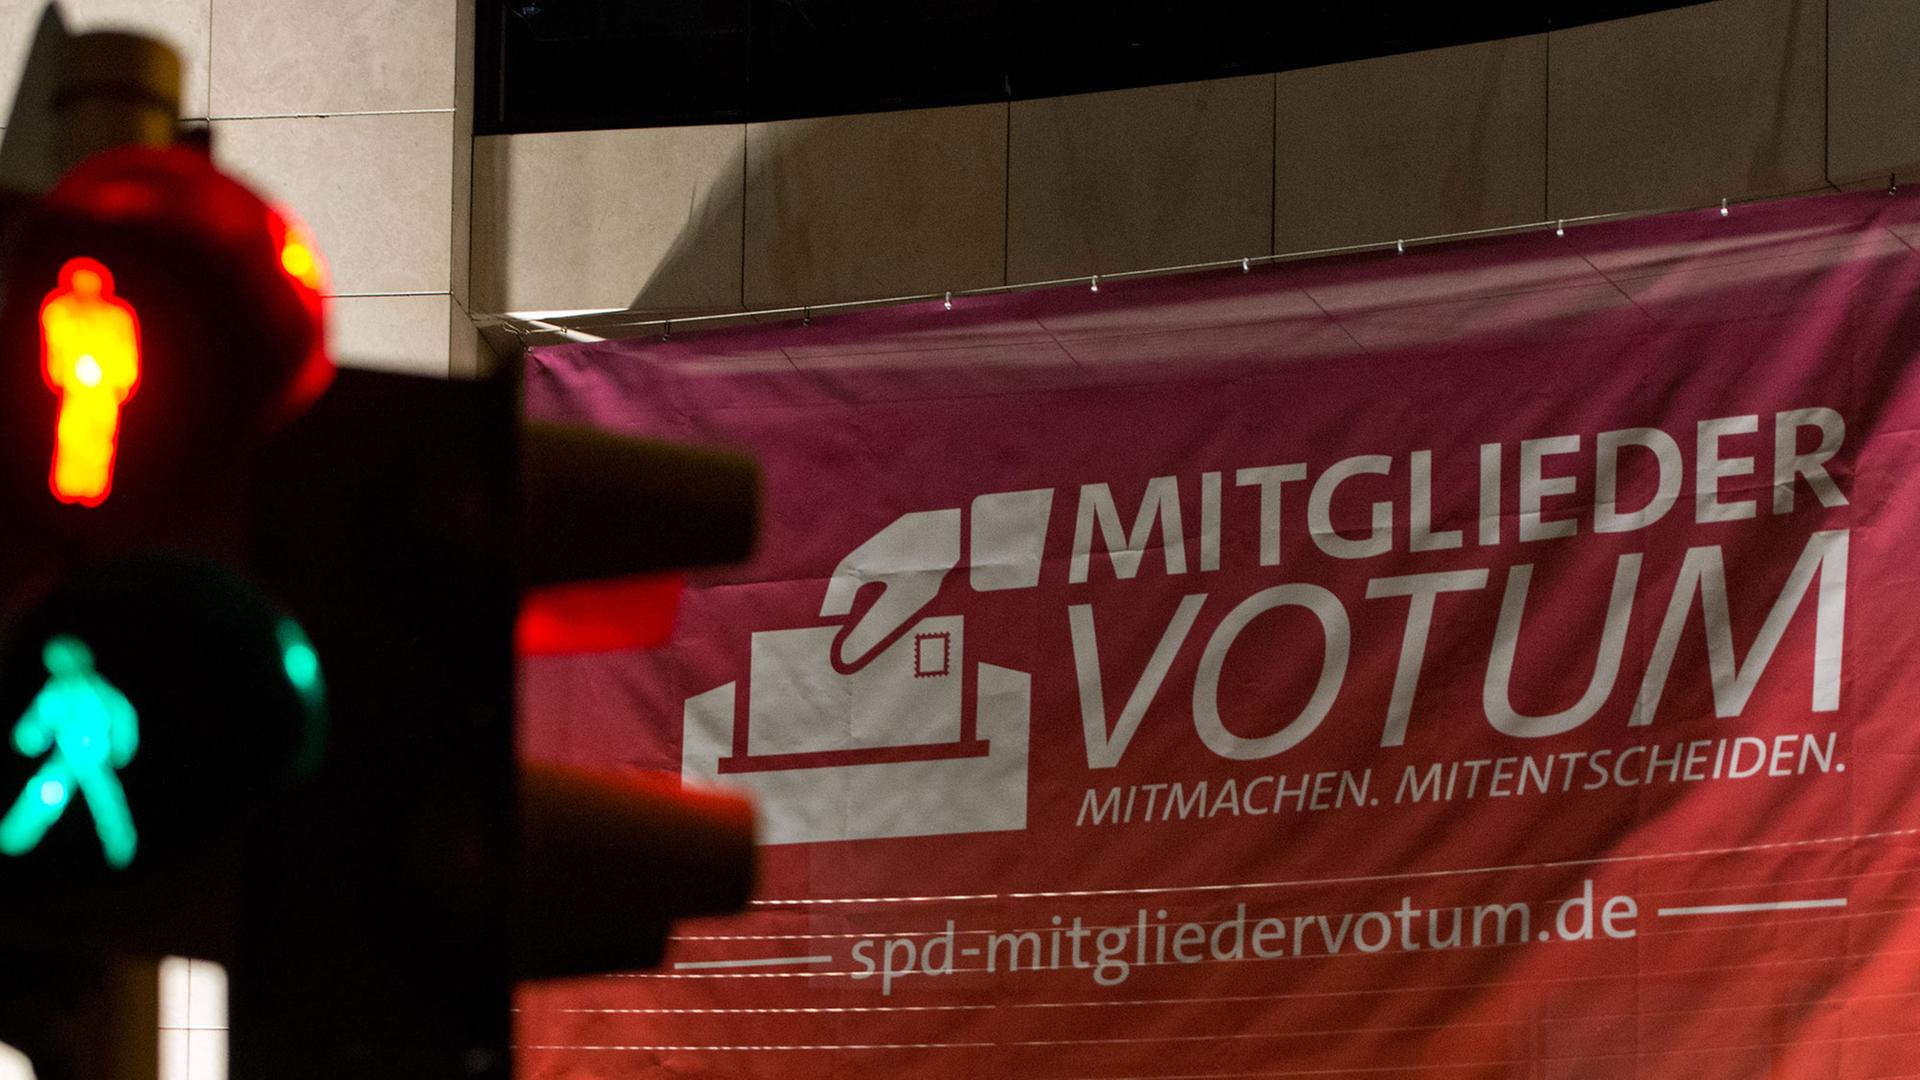 Die Anzeige einer Fußgängerampel wechselt in der Nacht zum 27.11.2013 vor dem Willy-Brandt-Haus in Berlin von Rot auf Grün. In der SPD-Parteizentrale finden Koalitionsverhandlungen zwischen SPD, CDU und CSU statt. Der fertige Koalitionsvertrag soll nach Abschluss der Verhandlungen den Mitgliedern der SPD zur Abstimmung vorgelegt werden.